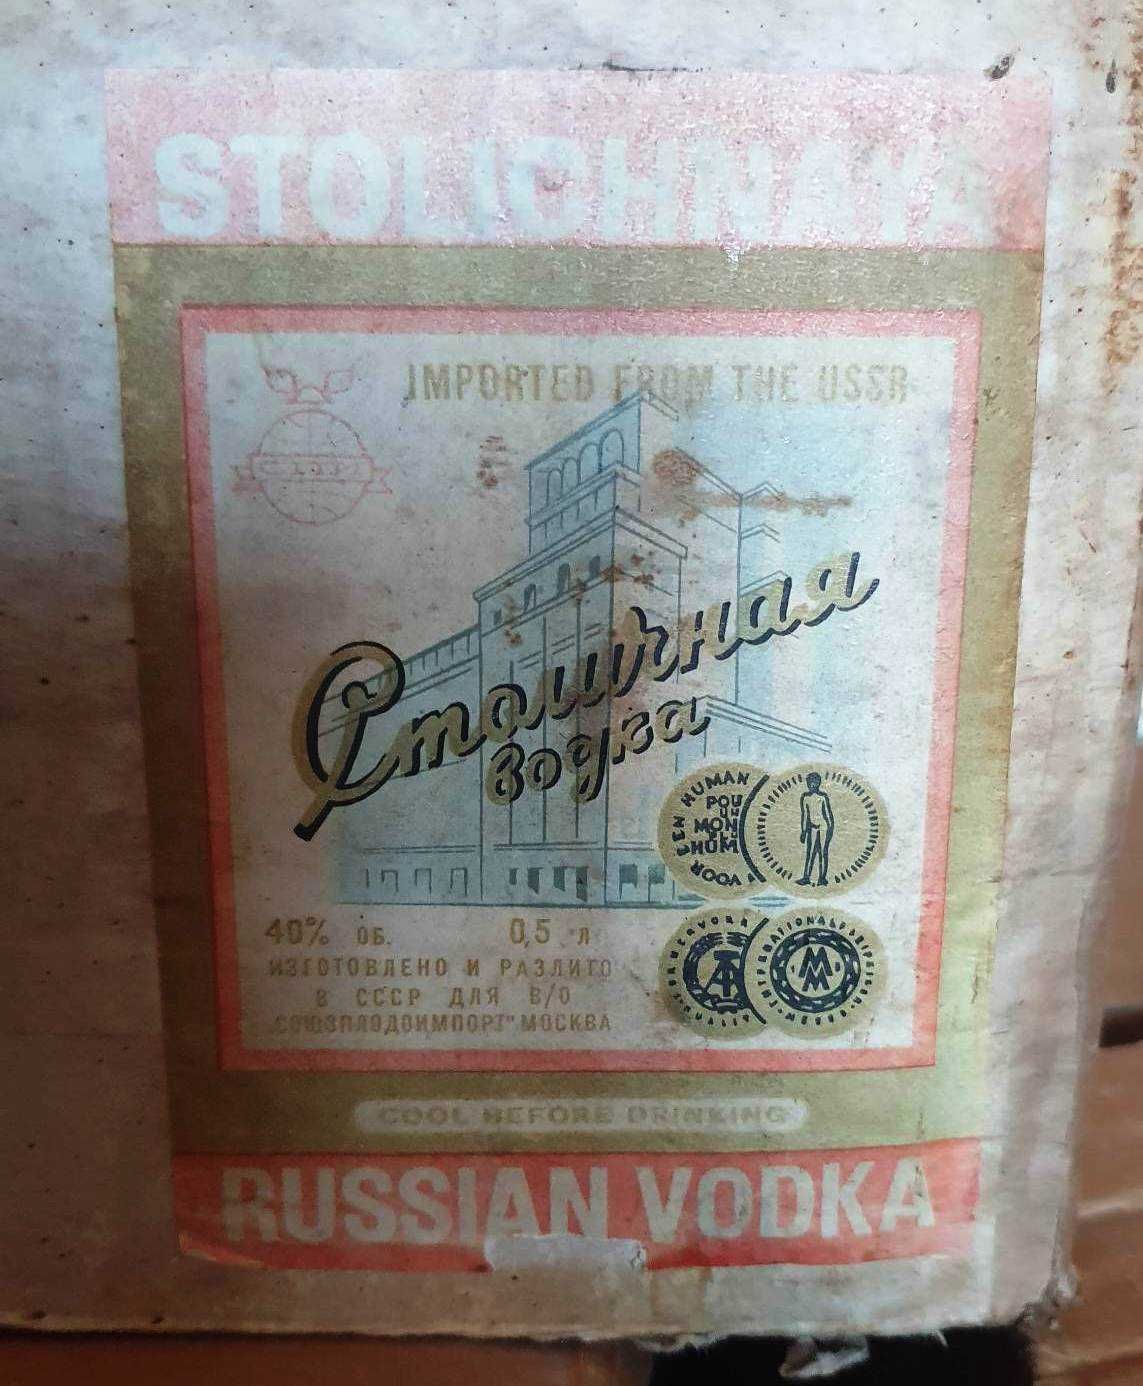 Cutie originala din carton presat anii 80 Soviet Vodka Made in USSR